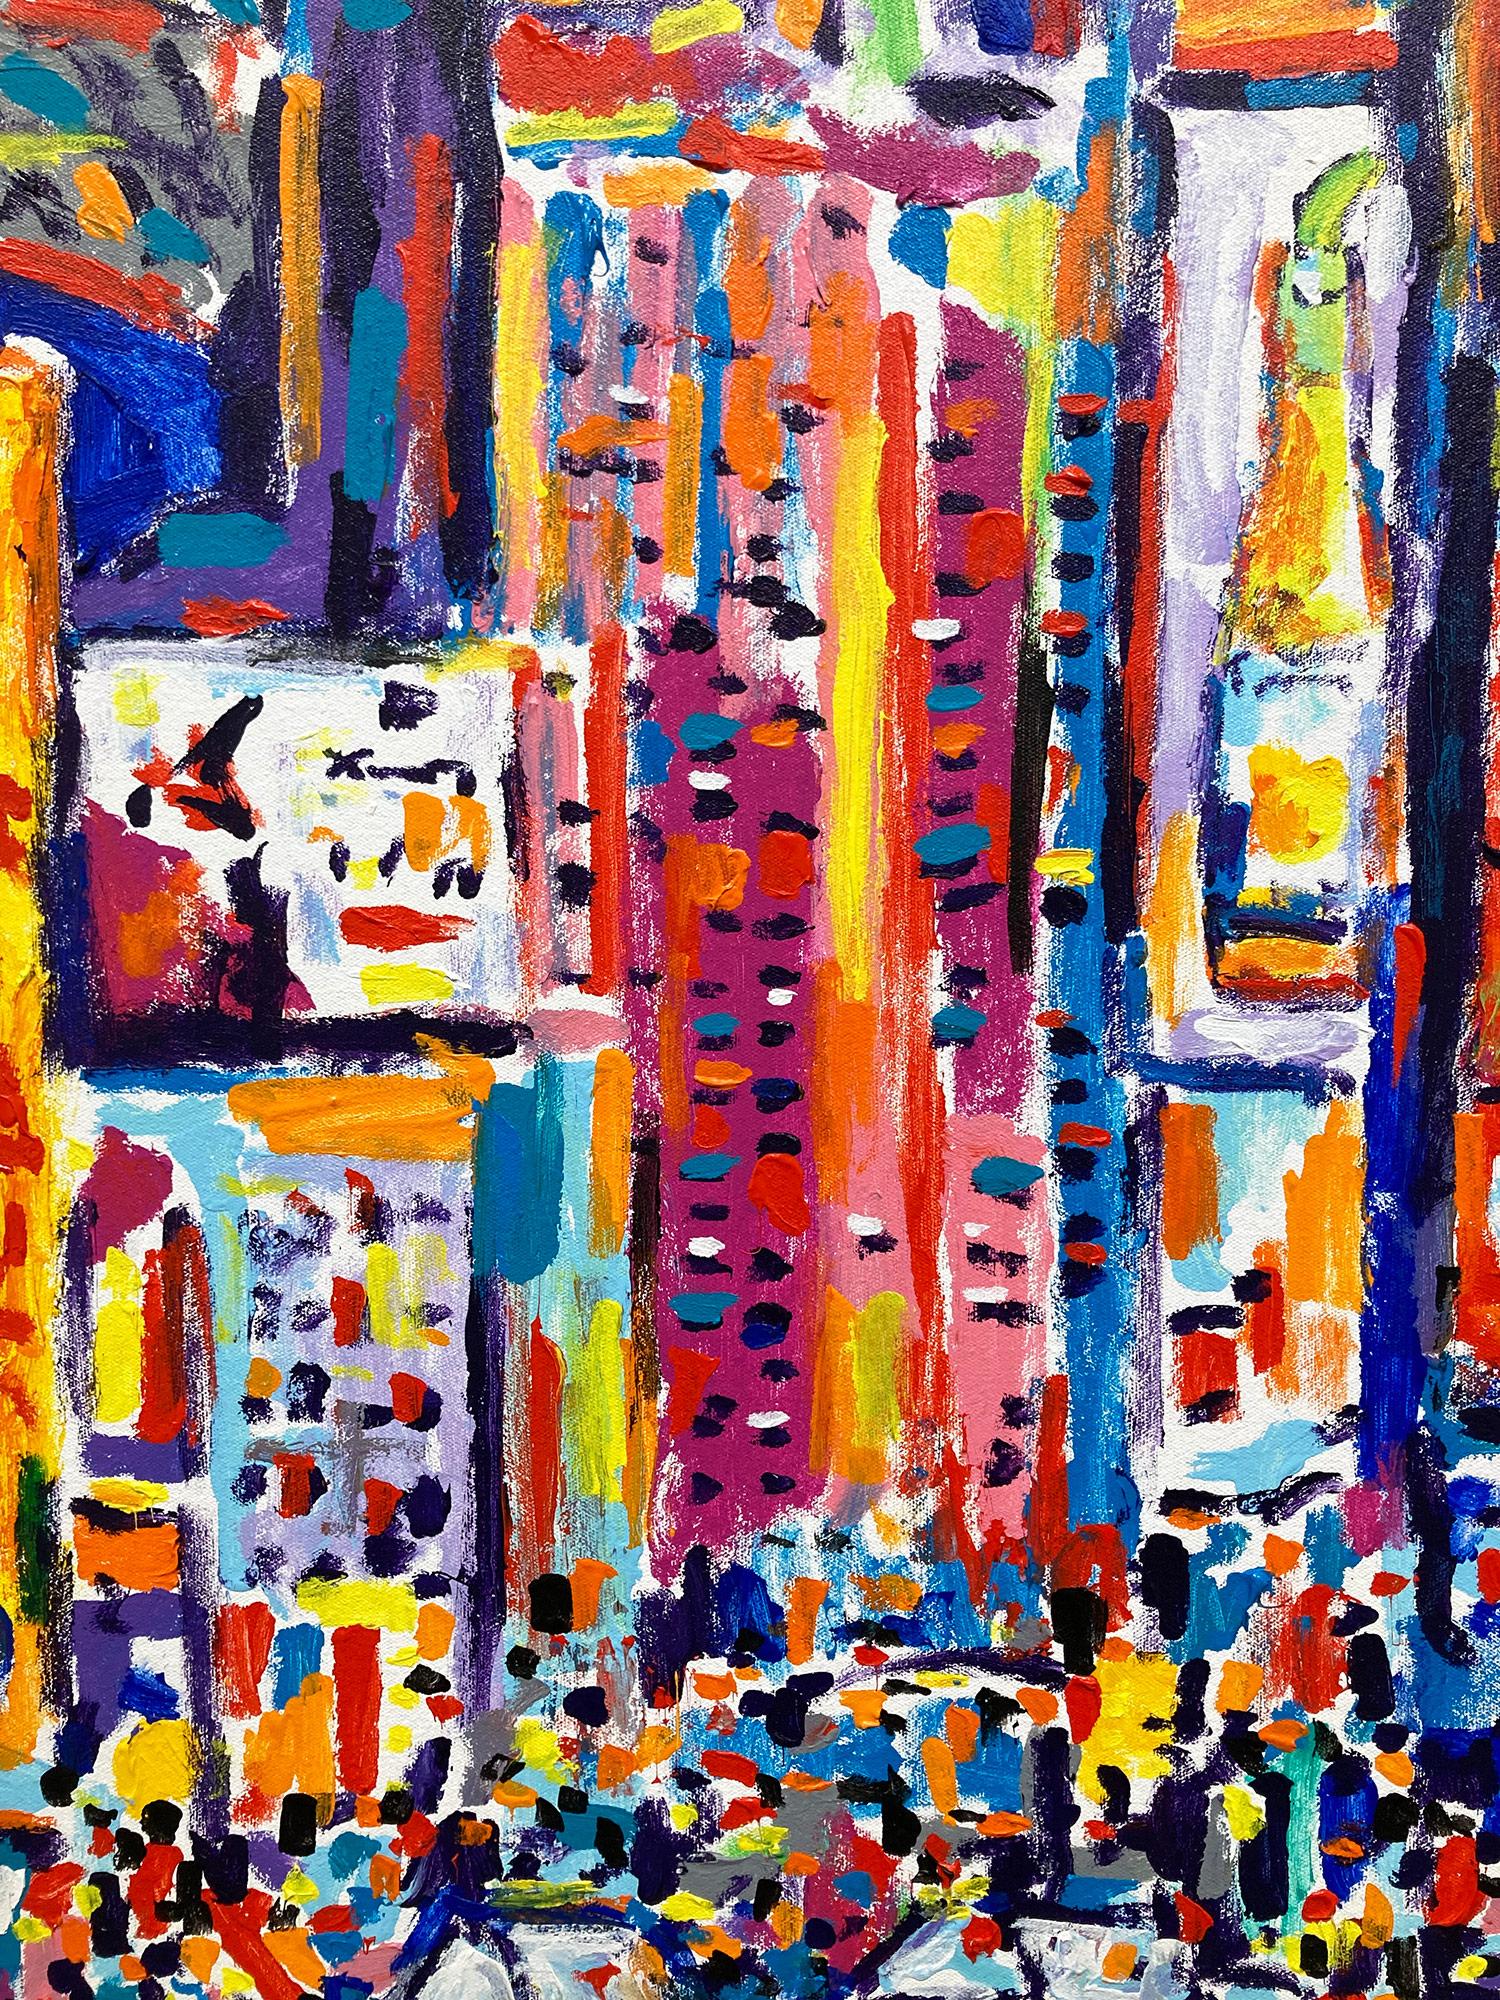 Ein poppiges Werk, das den berühmten Times Square in Midtown Manhattan mit Taxis, Autos und Menschen in einer farbenfrohen und pastosen Straßenszene zeigt. Mit schnellen Pinselstrichen werden wir in die Bewegung hineingezogen, denn der Künstler